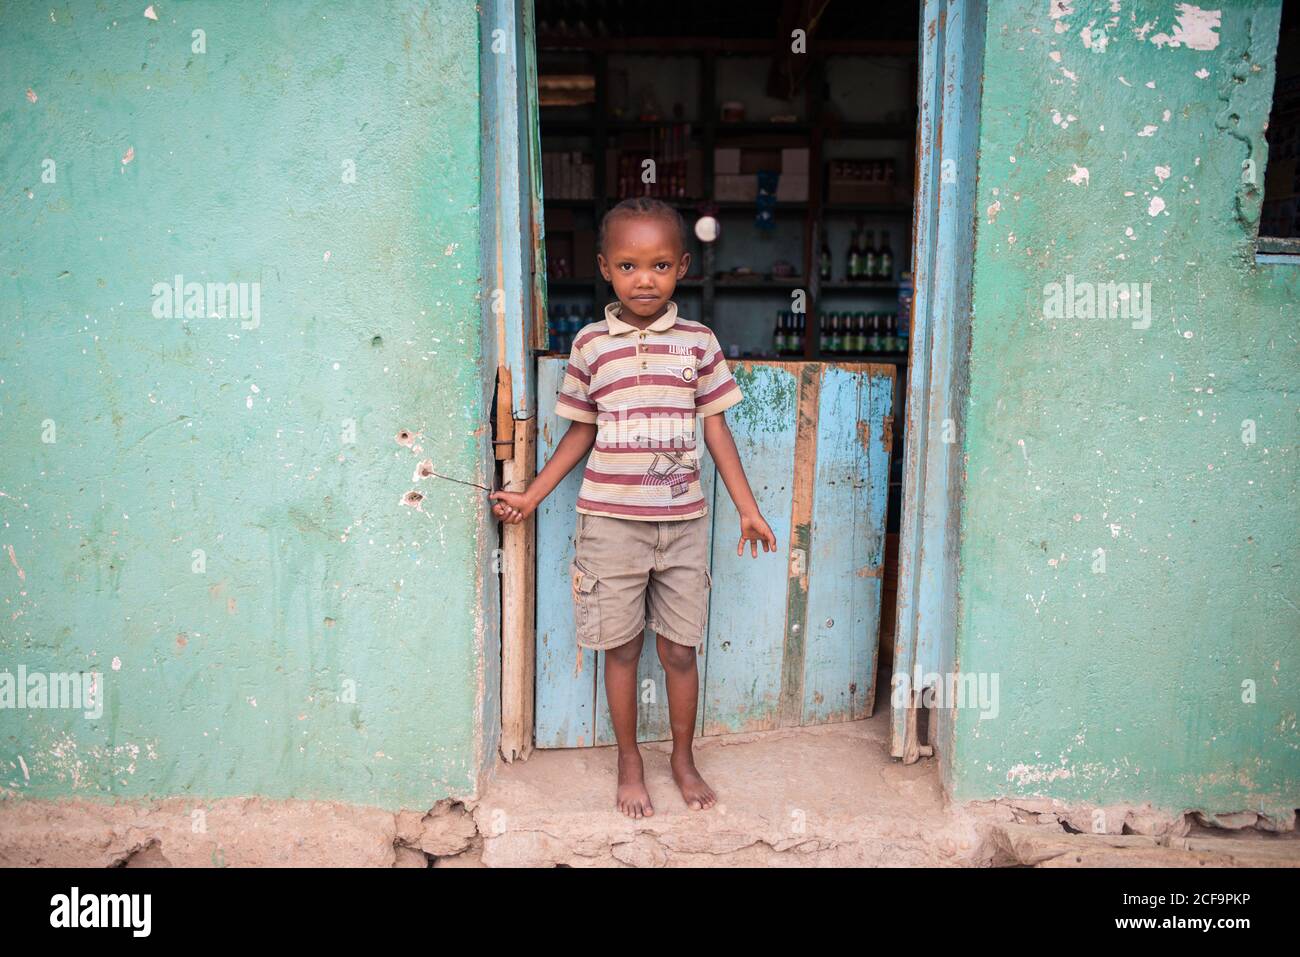 Tanzanie, Afrique de l'est - novembre, 2016: Petit garçon africain dans des vêtements décontractés debout et regardant la caméra près de la petite maison ancienne à la rue de la ville de Tanzanie Banque D'Images